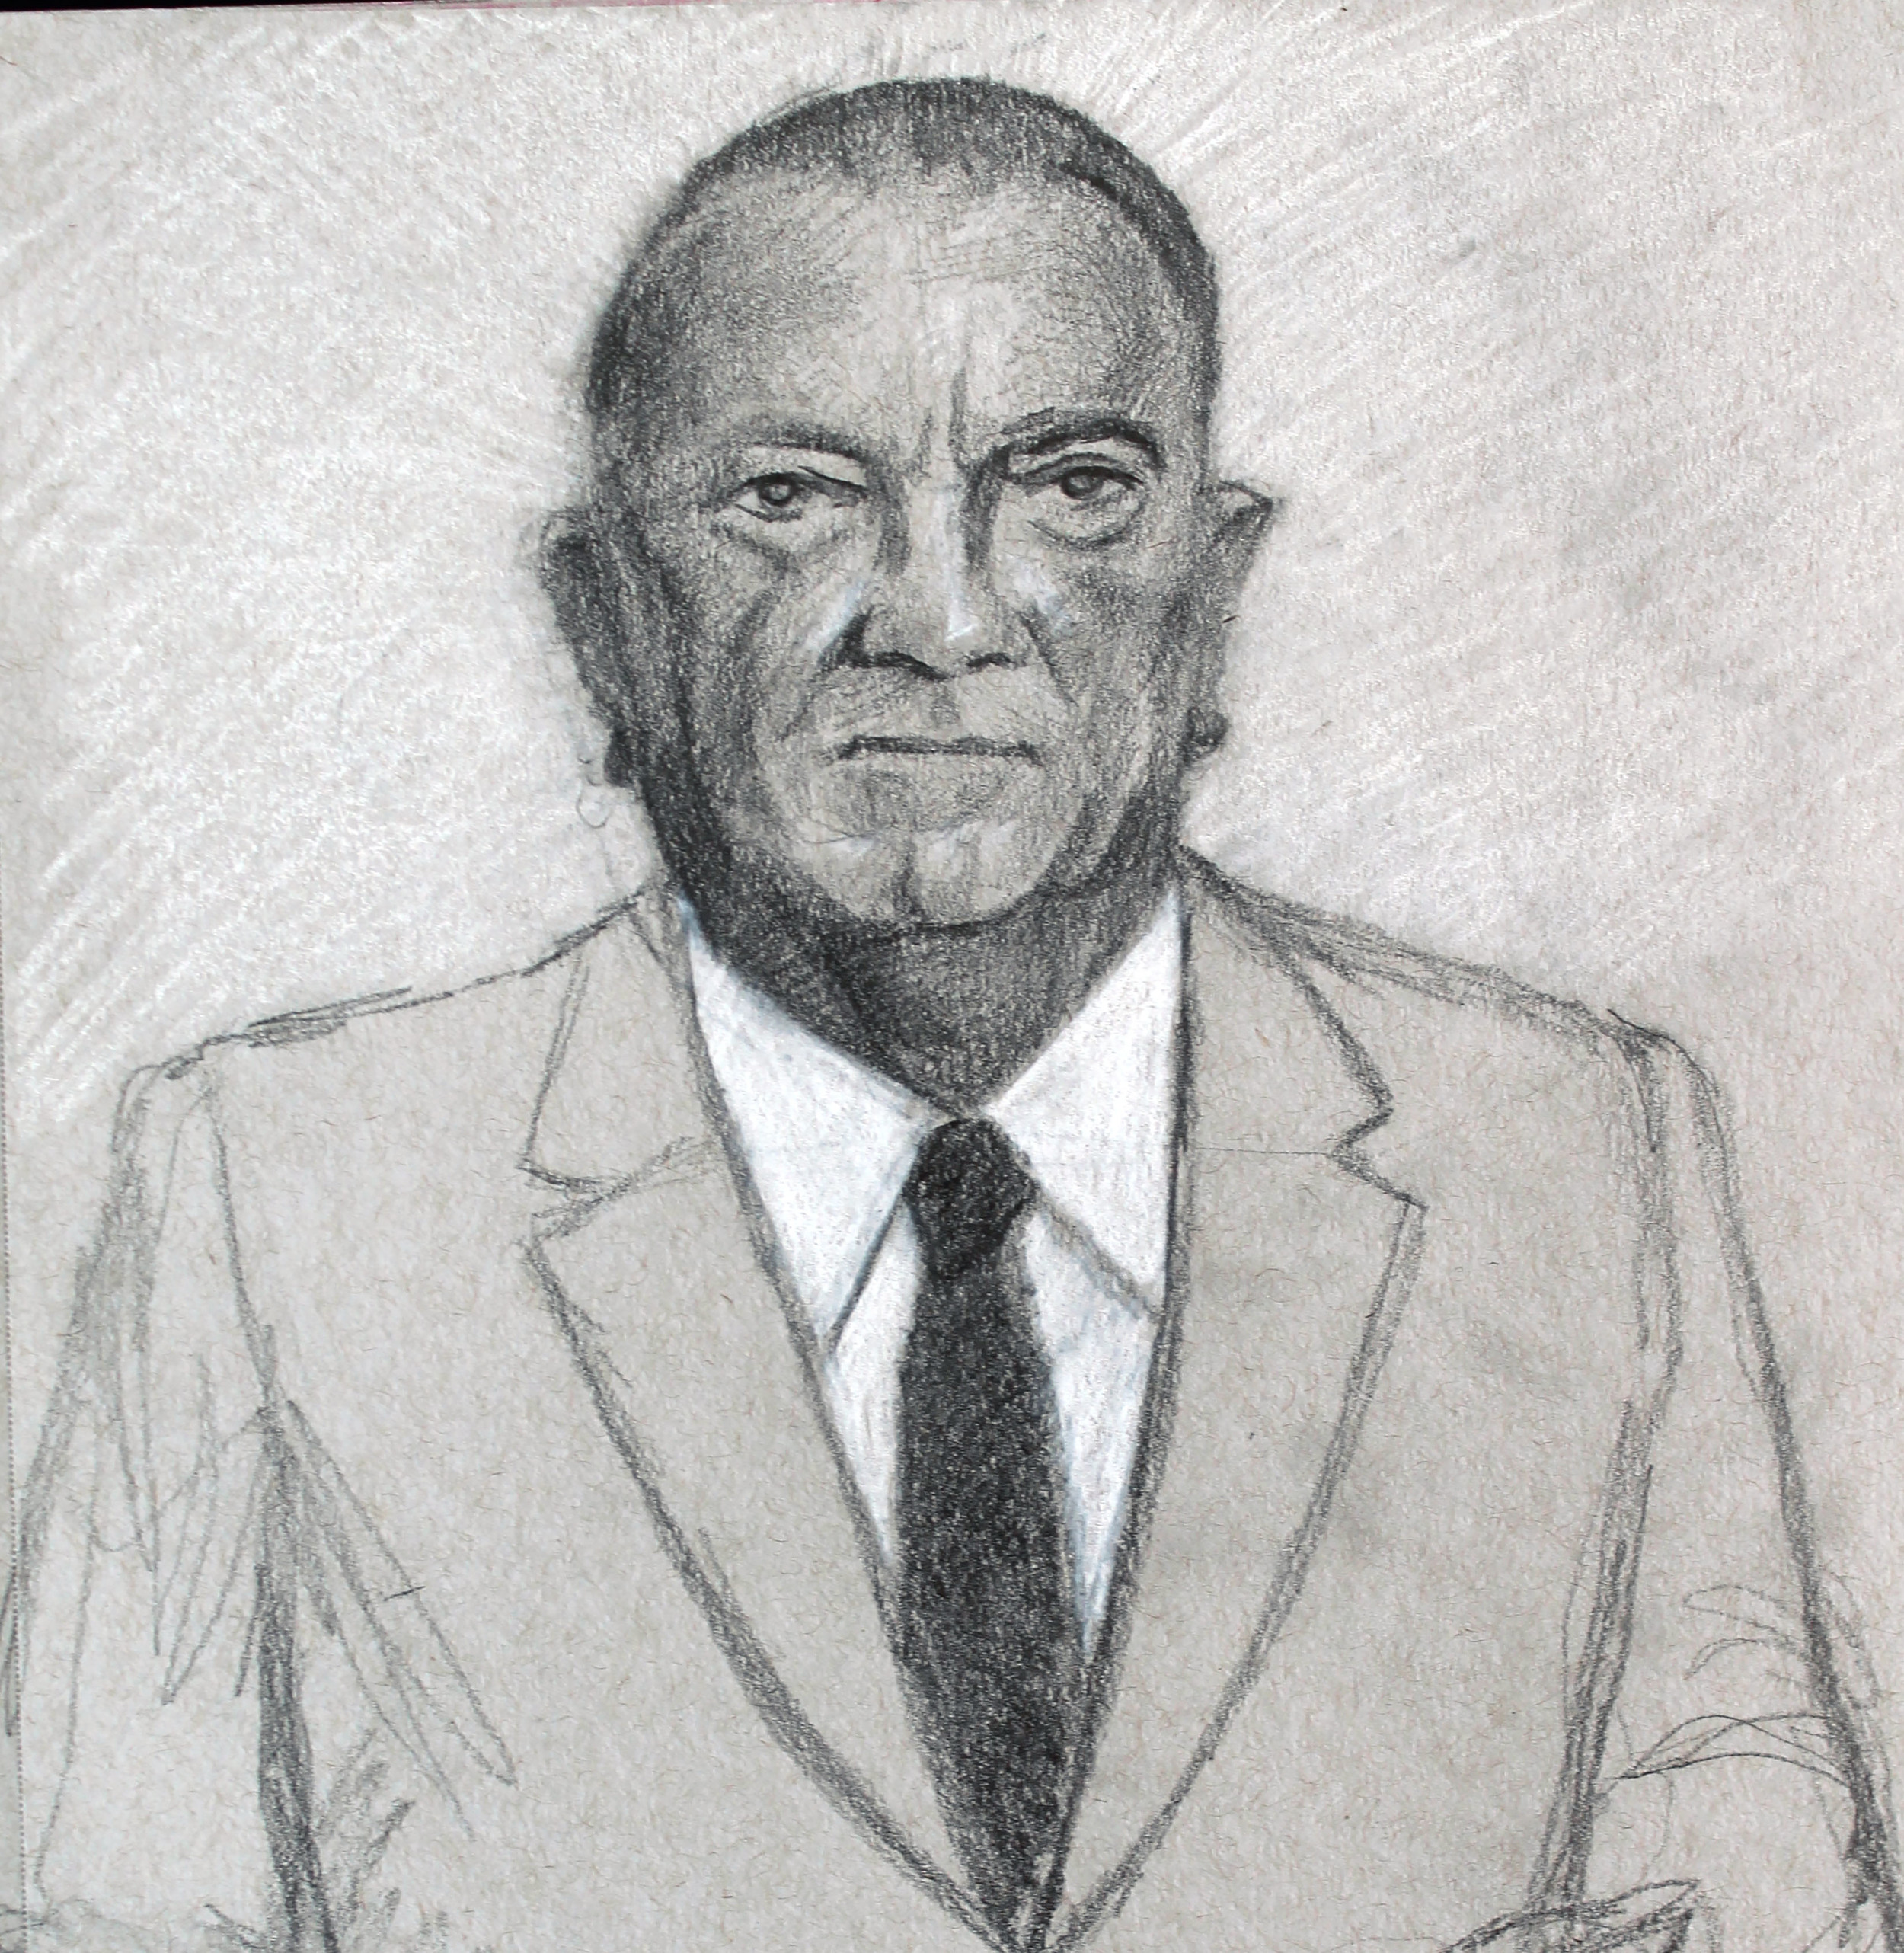 J Edgar Hoover - First FBI Director